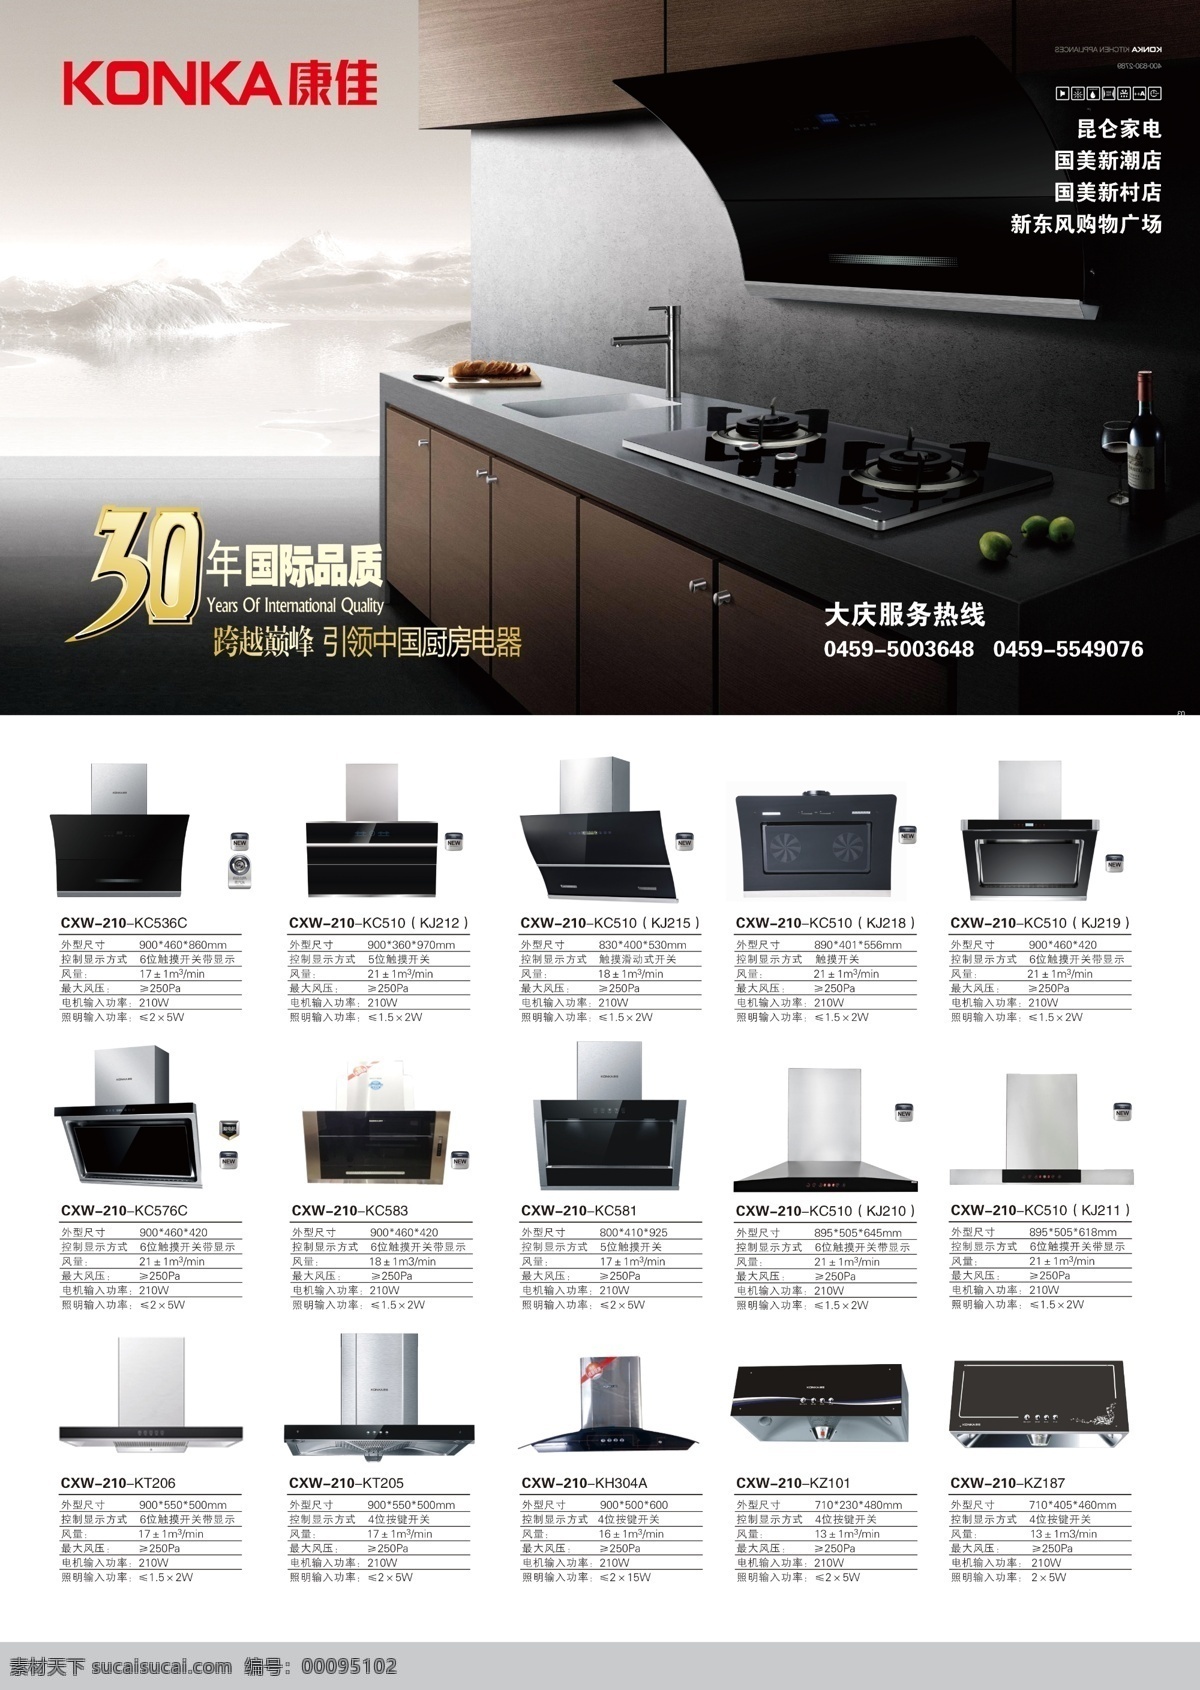 康佳 厨房电器宣传 宣传 燃气灶 厨房电器 厨房 宣传彩页